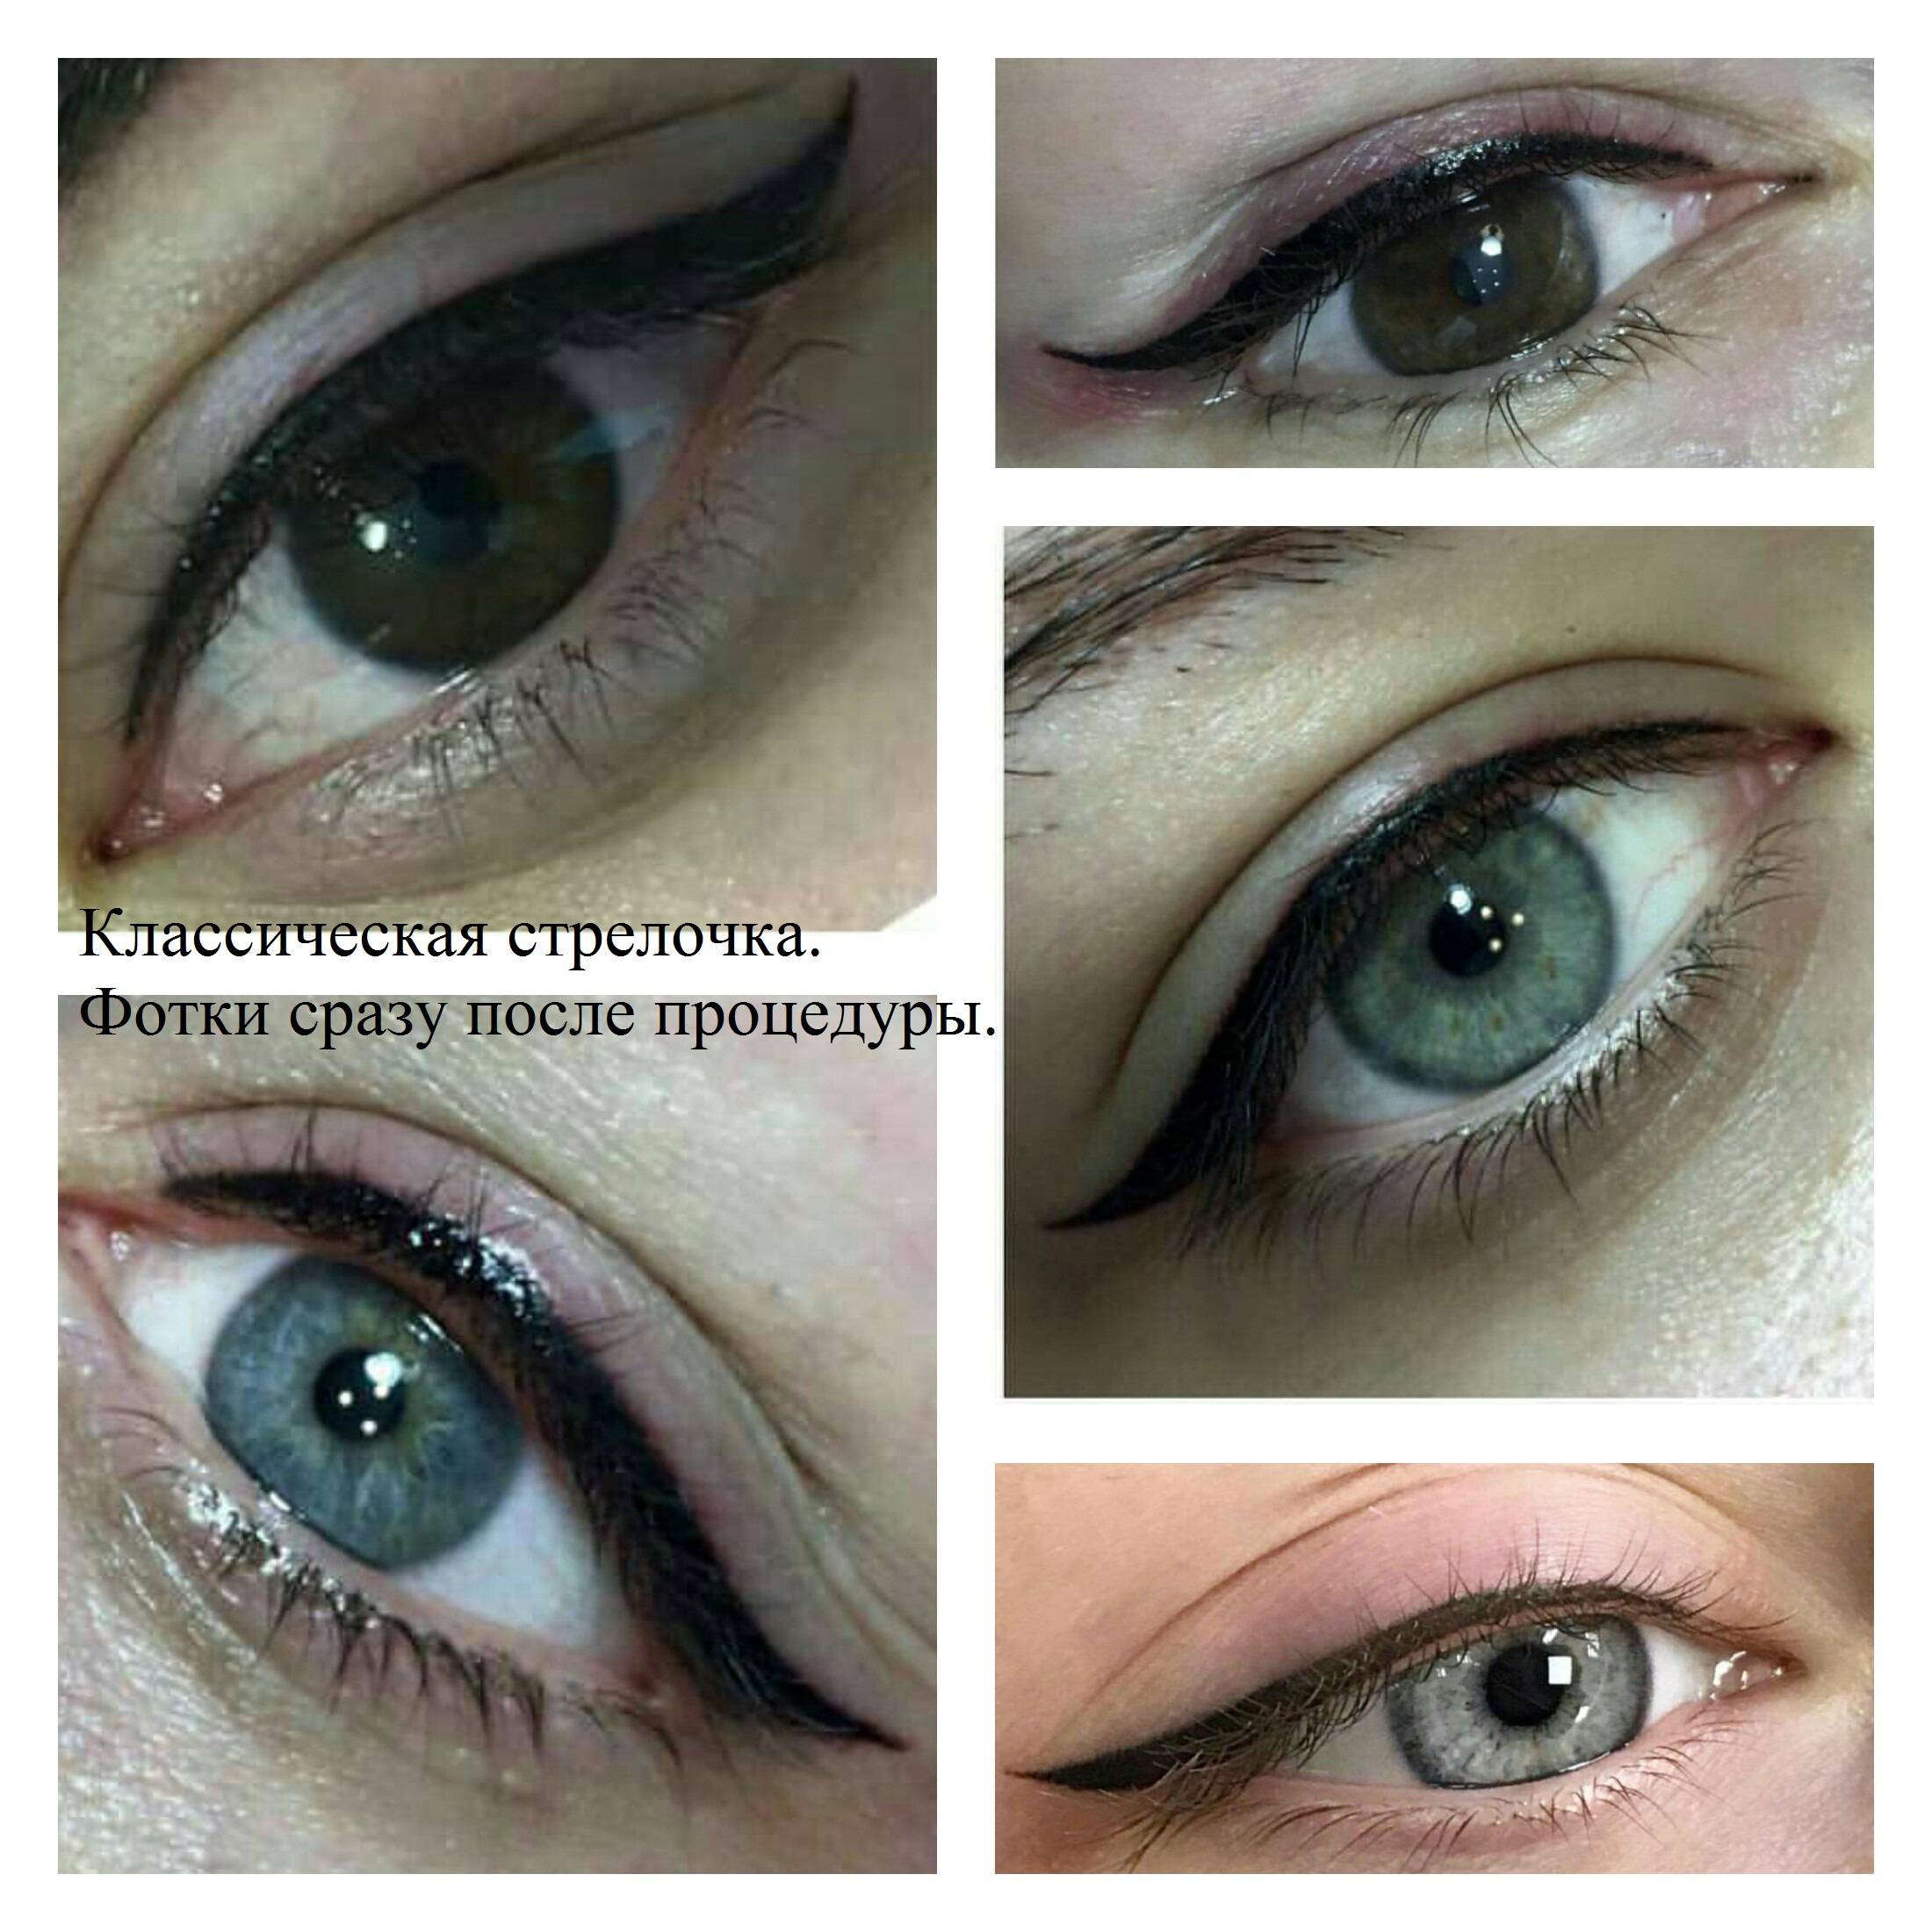 Как делают татуаж глаз с растушевкой: этапы процедуры. татуаж глаз — сколько держится? татуаж глаз с растушевкой: фото до и после, отзывы